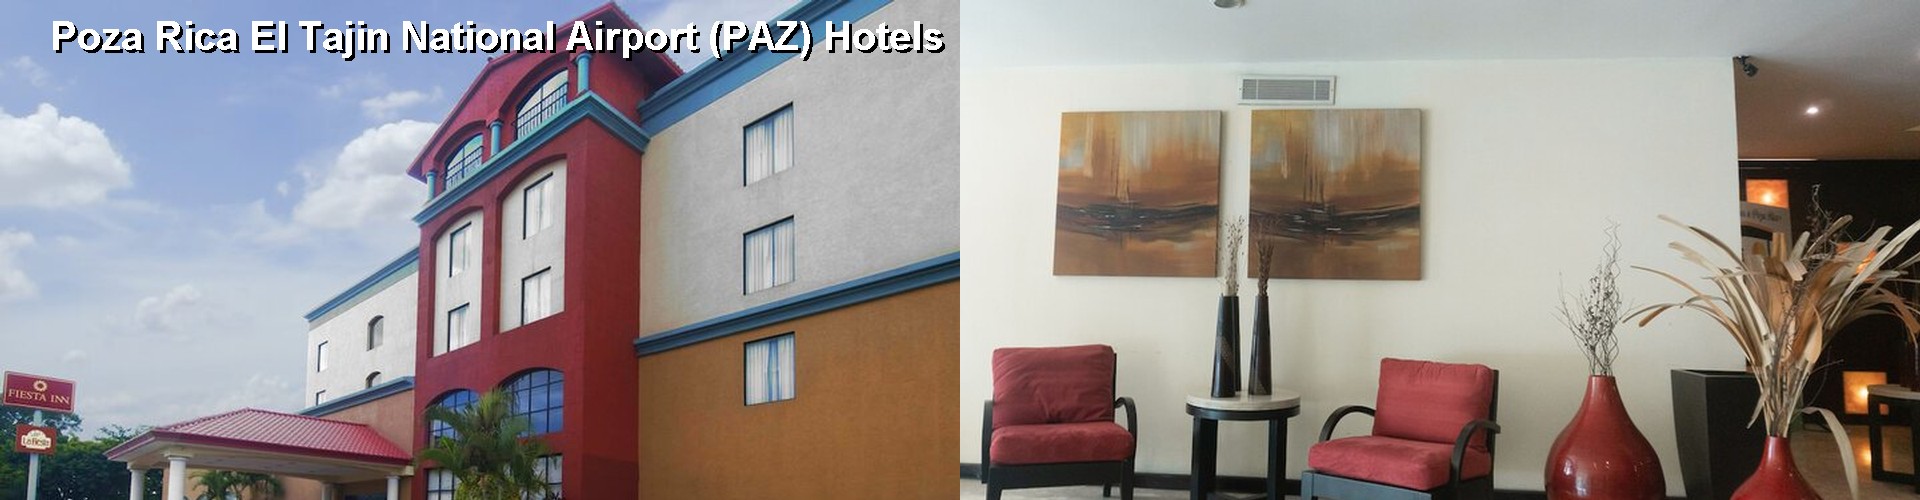 5 Best Hotels near Poza Rica El Tajin National Airport (PAZ)